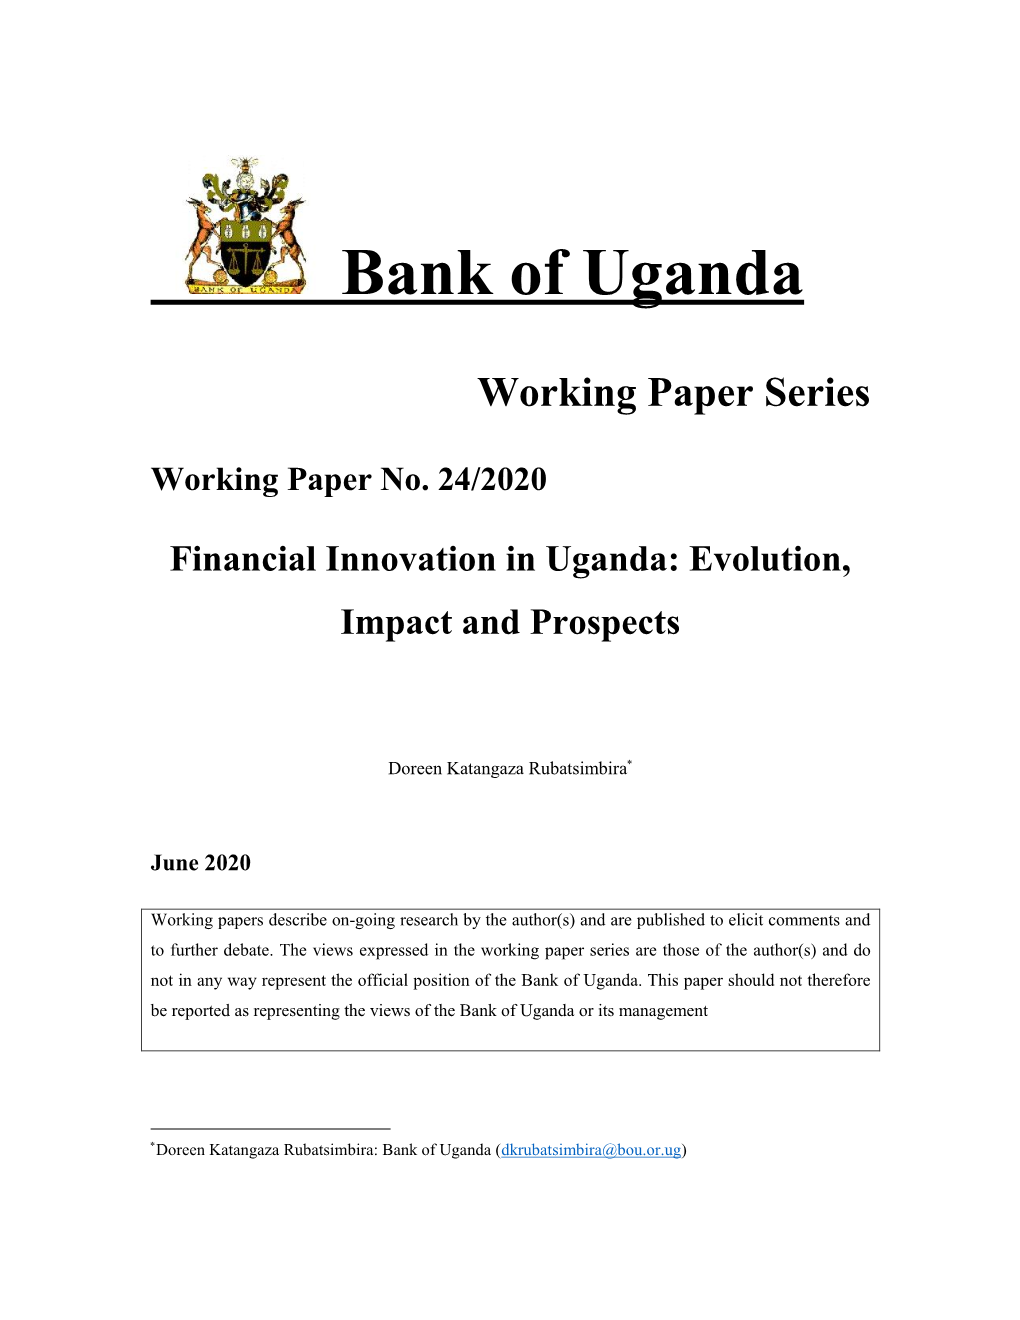 Financial Innovation in Uganda: Evolution